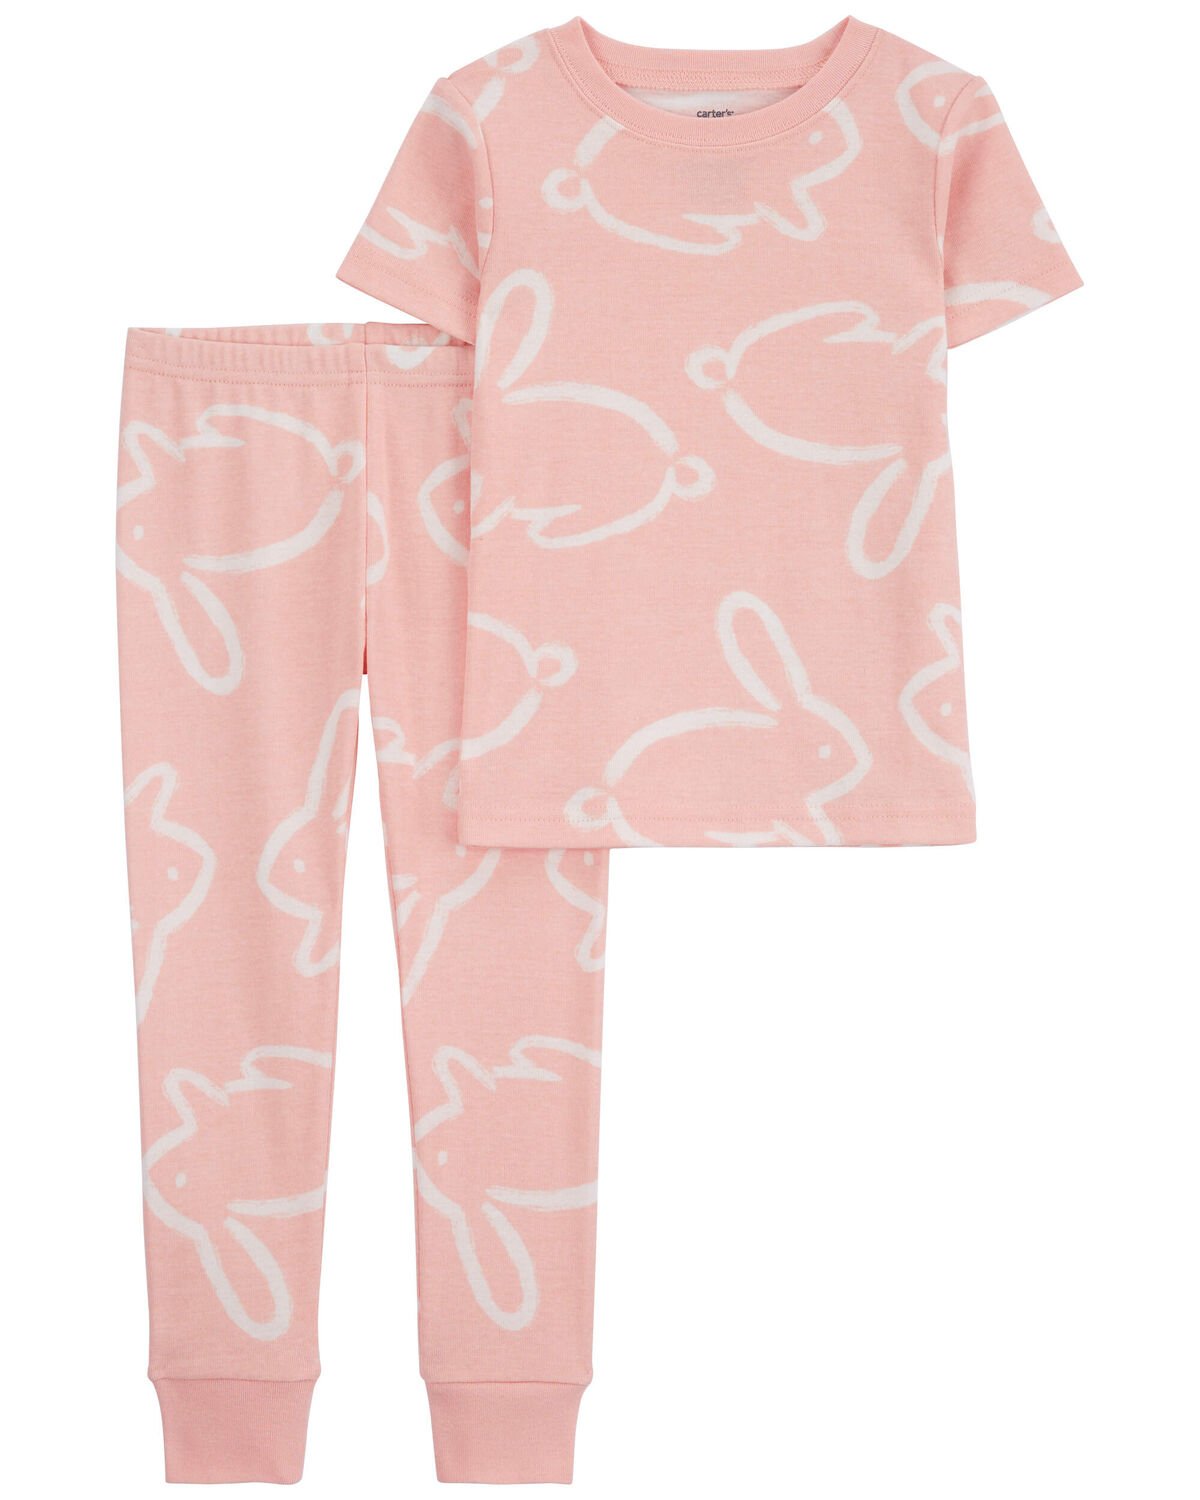 Toddler 2-Piece Bunny Snug Fit Cotton Pajamas Pink.jpeg